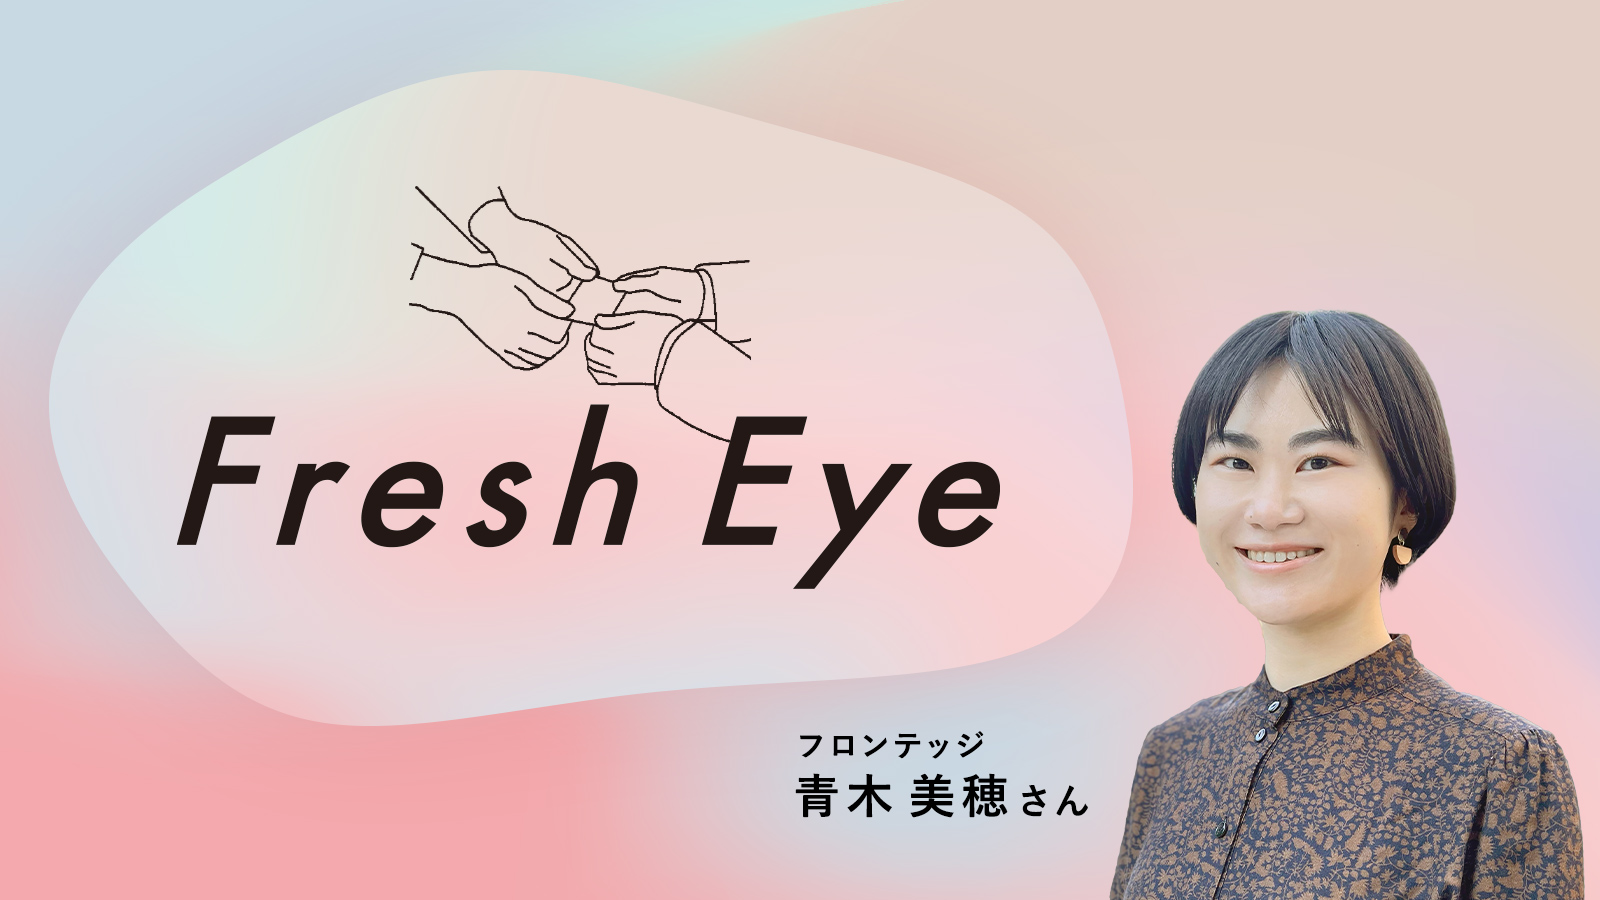 広告に問いはあるか。／フロンテッジ 青木美穂さん〈Fresh Eye〉